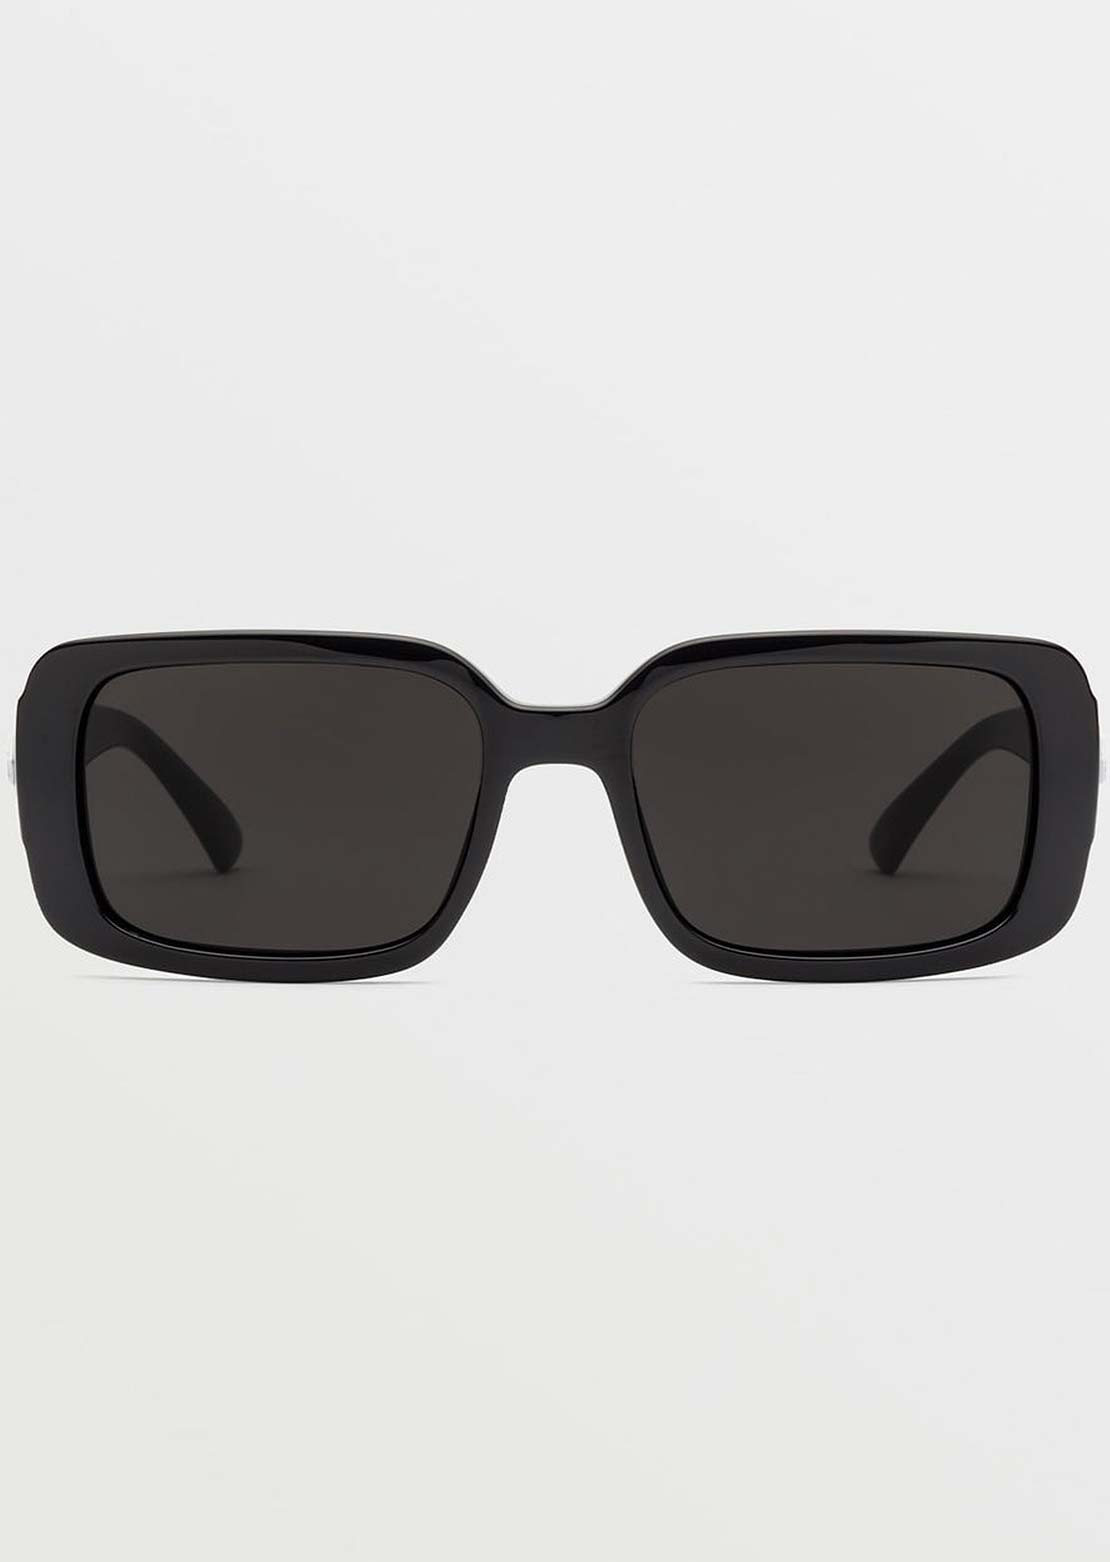 Volcom True Sunglasses Gloss Black/Gray